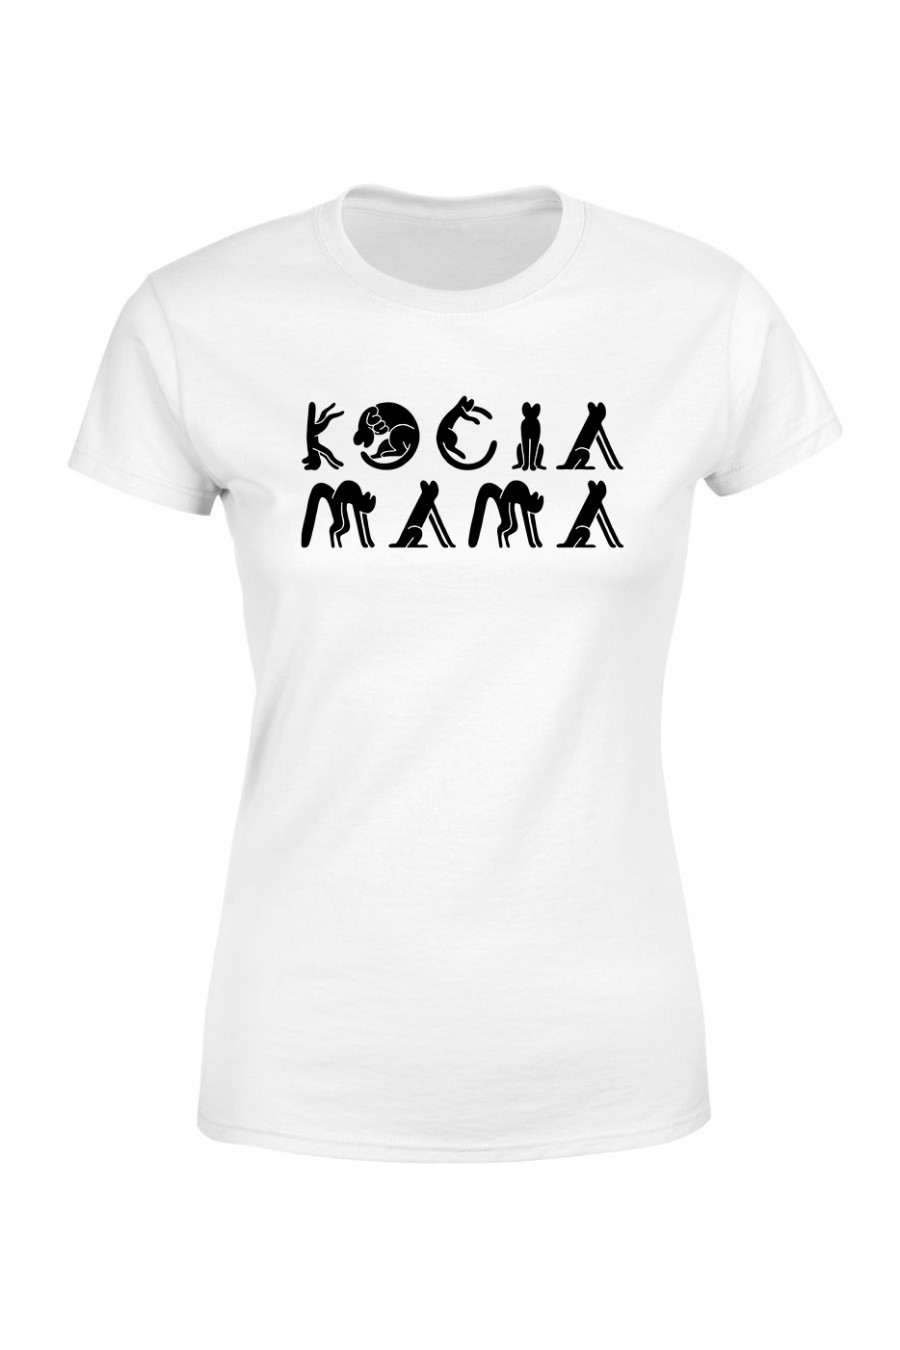 Koszulka Damska Kocia Mama 2